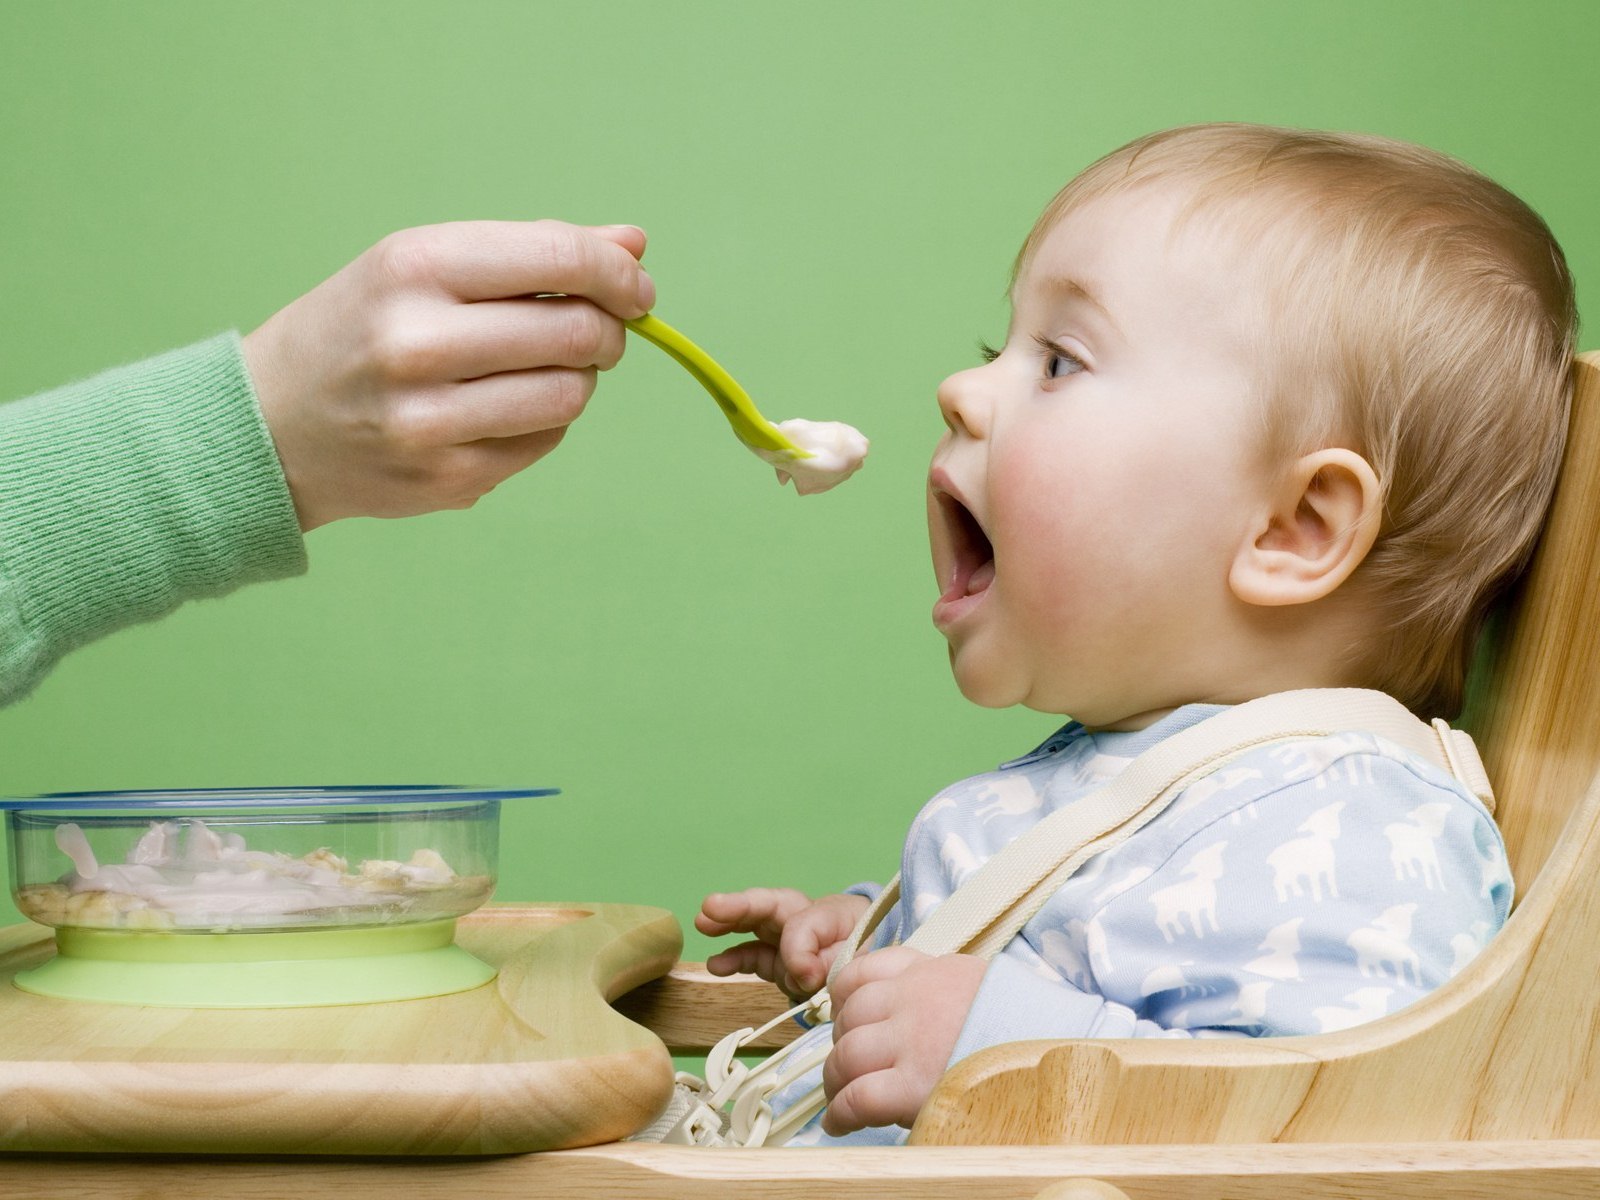 Из санкционного списка исключены продукты для детского питания